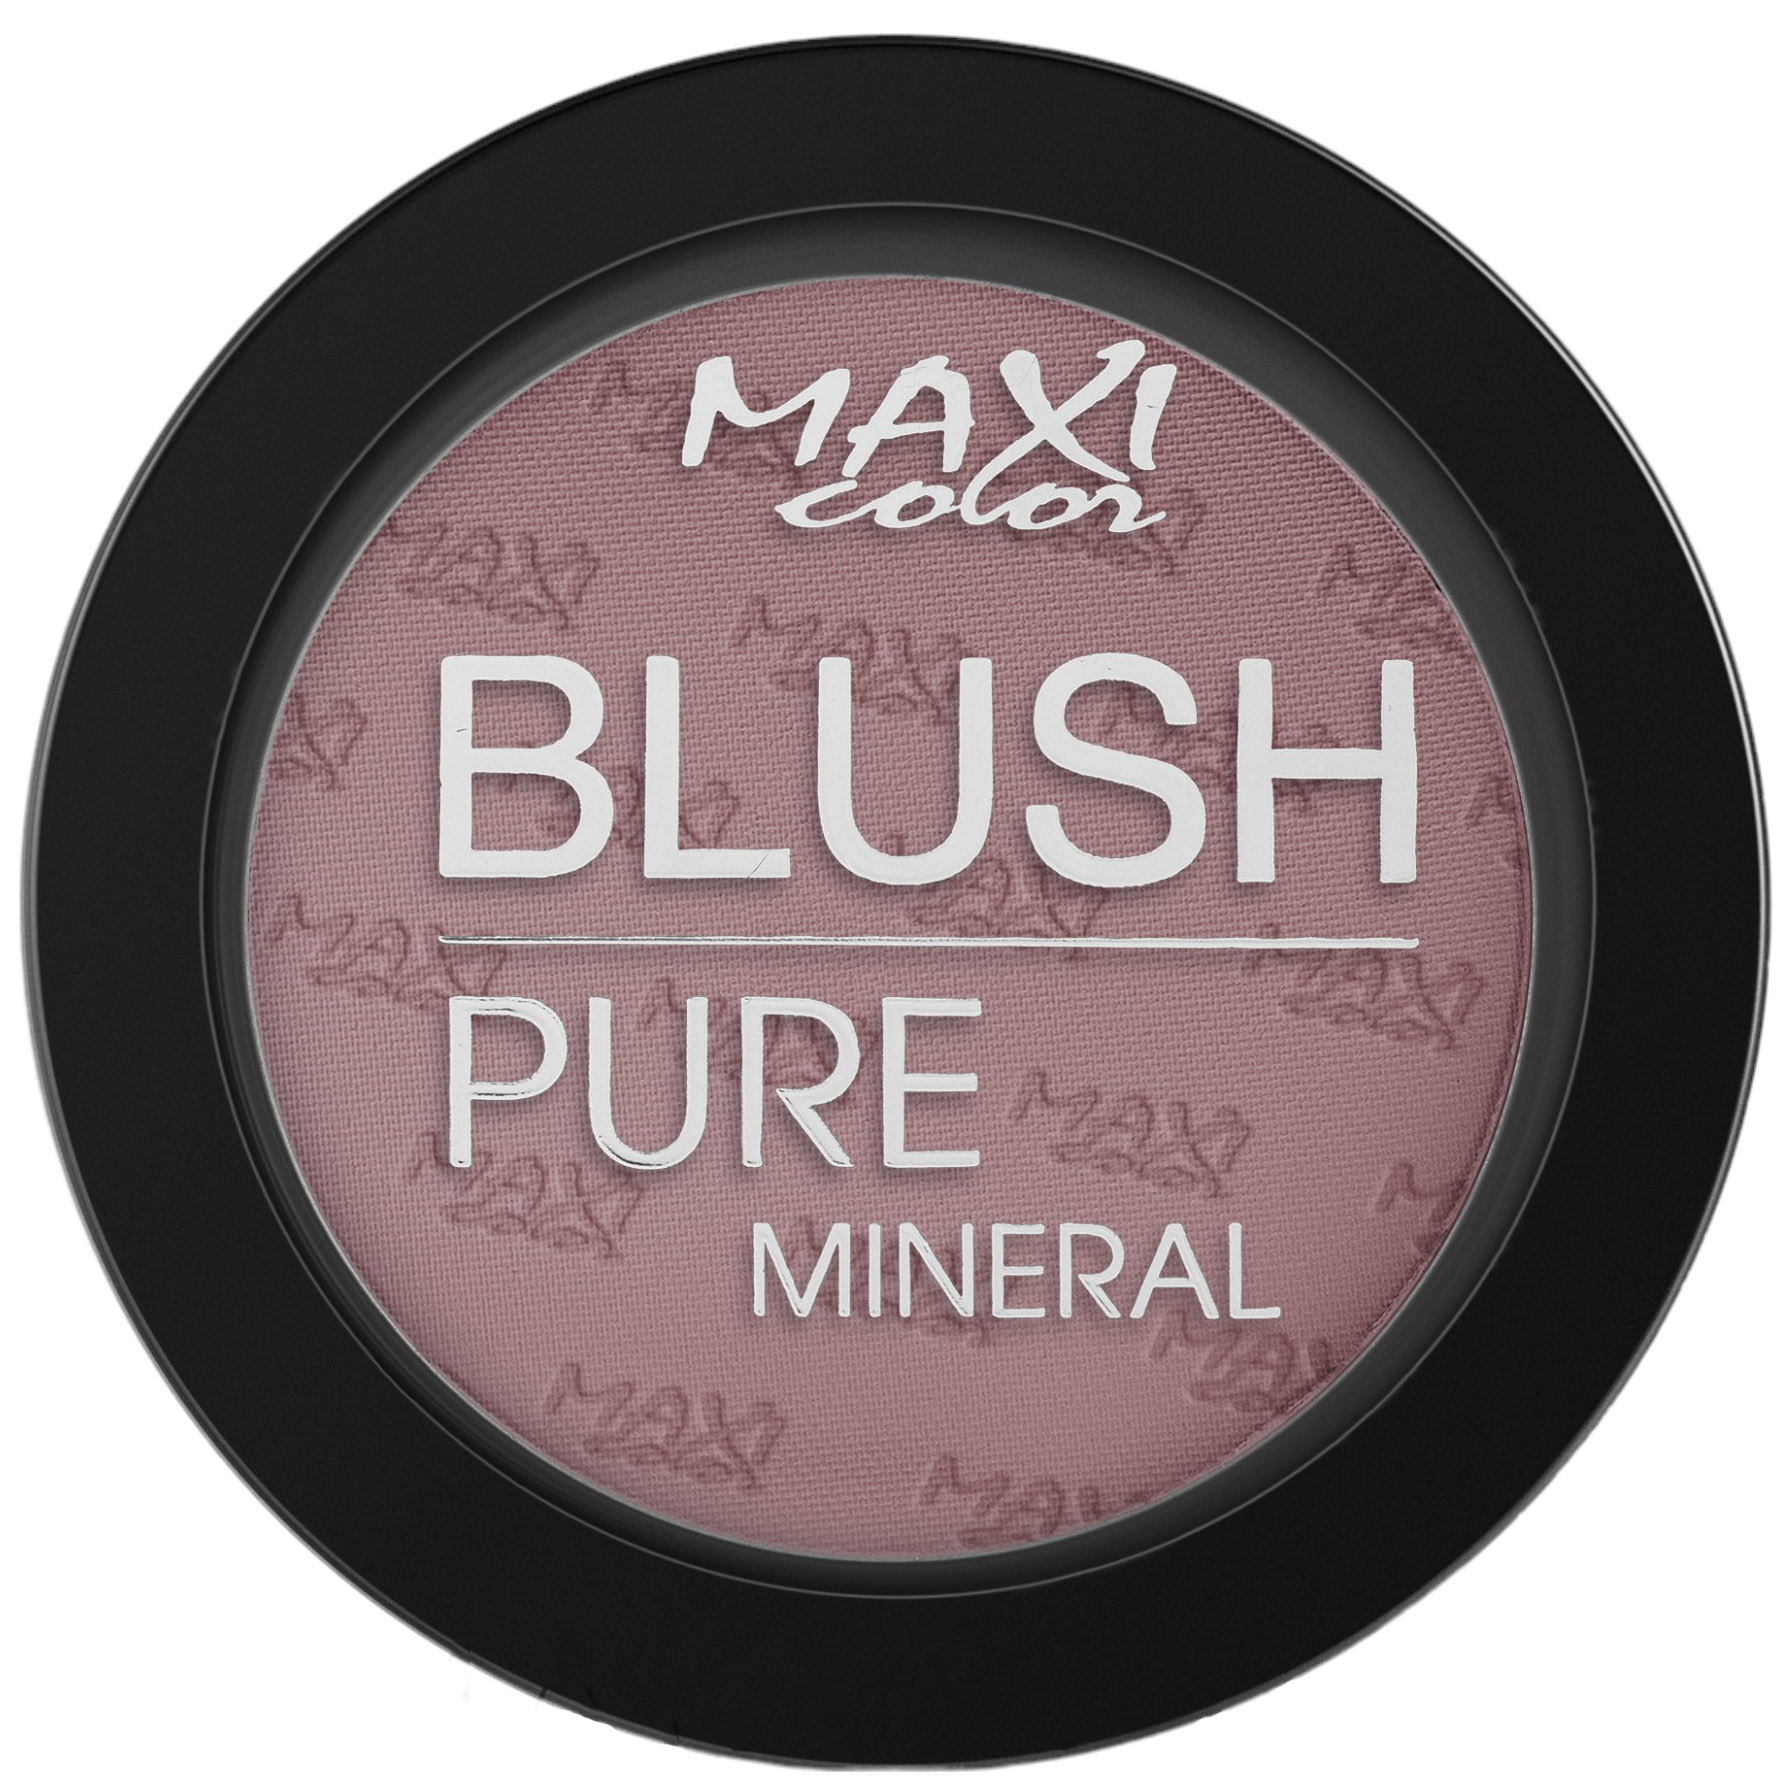 Румяна Maxi Color Mineral Pure тон 01 нежный розовый 6 г - фото 1